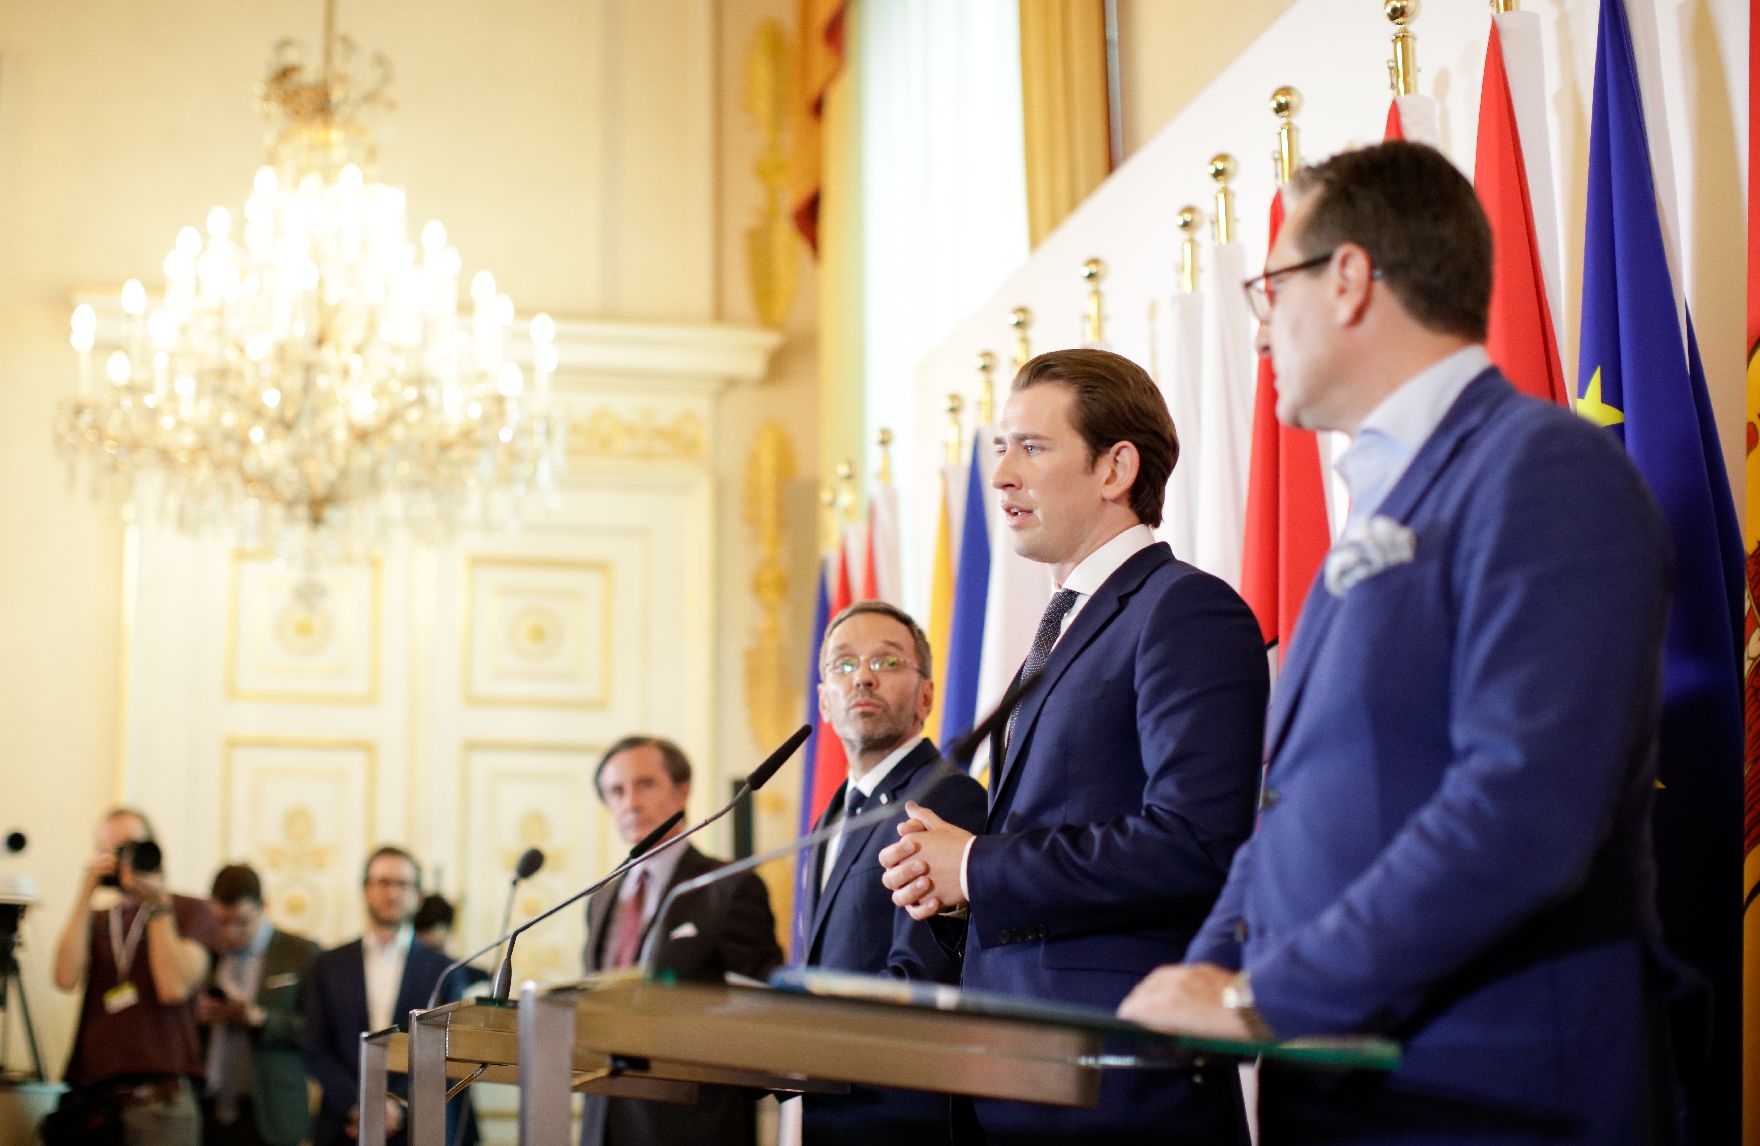 Am 3. Juli 2018 gab Bundeskanzler Sebastian Kurz (m.) gemeinsam mit Vizekanzler Heinz-Christian Strache (r.) und Bundesminister Herbert Kickl (l.) eine Pressekonferenz zu den deutschen Asylplänen.